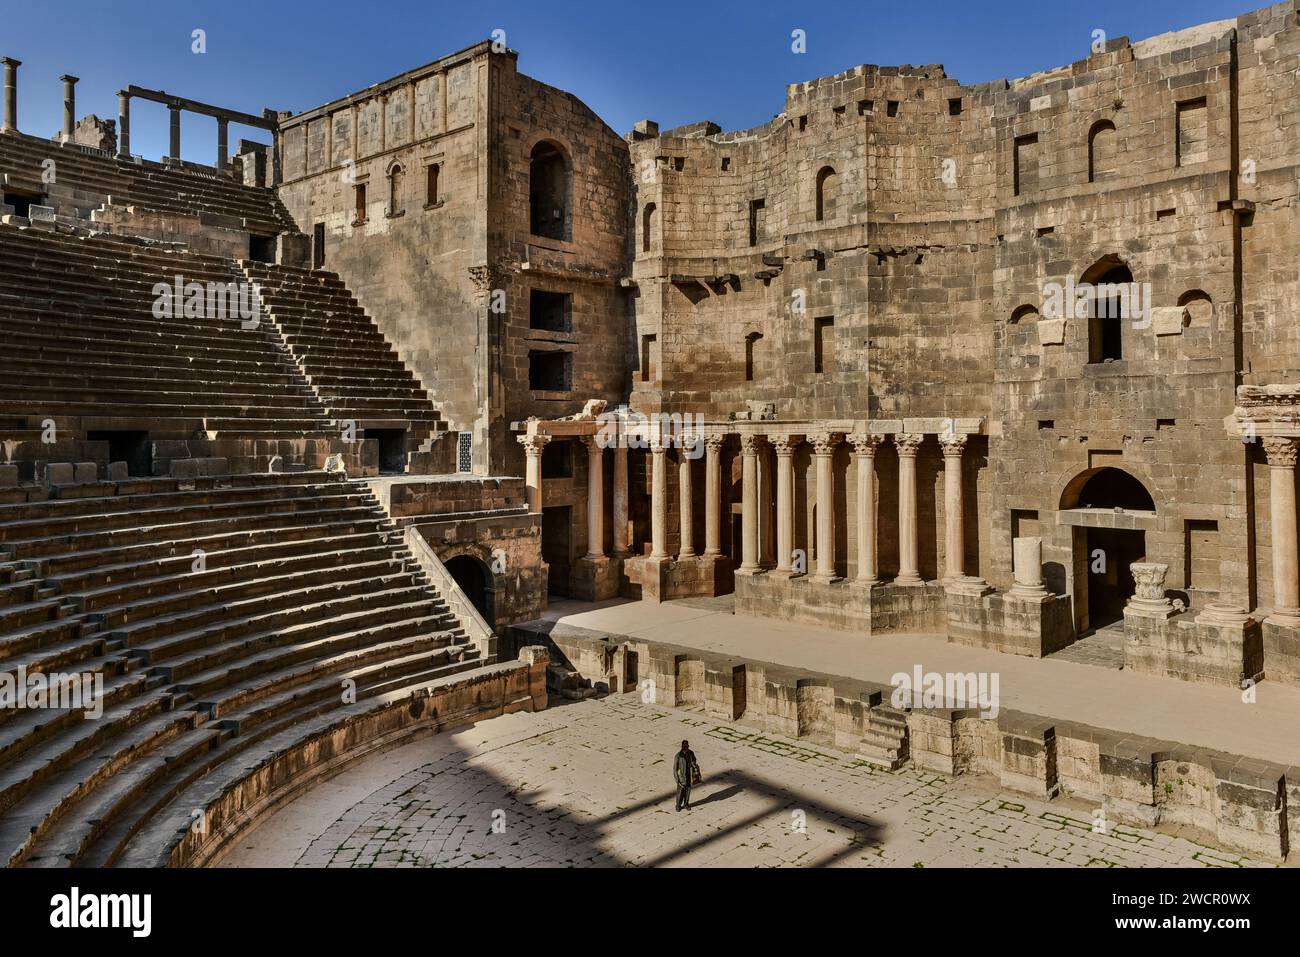 Teatro romano del II secolo d.C. a Bosra alias Busra, Busr come Sam, Distretto di Dar'a, Siria, nei territori controllati dall'Esercito siriano libero (FSA) Foto Stock